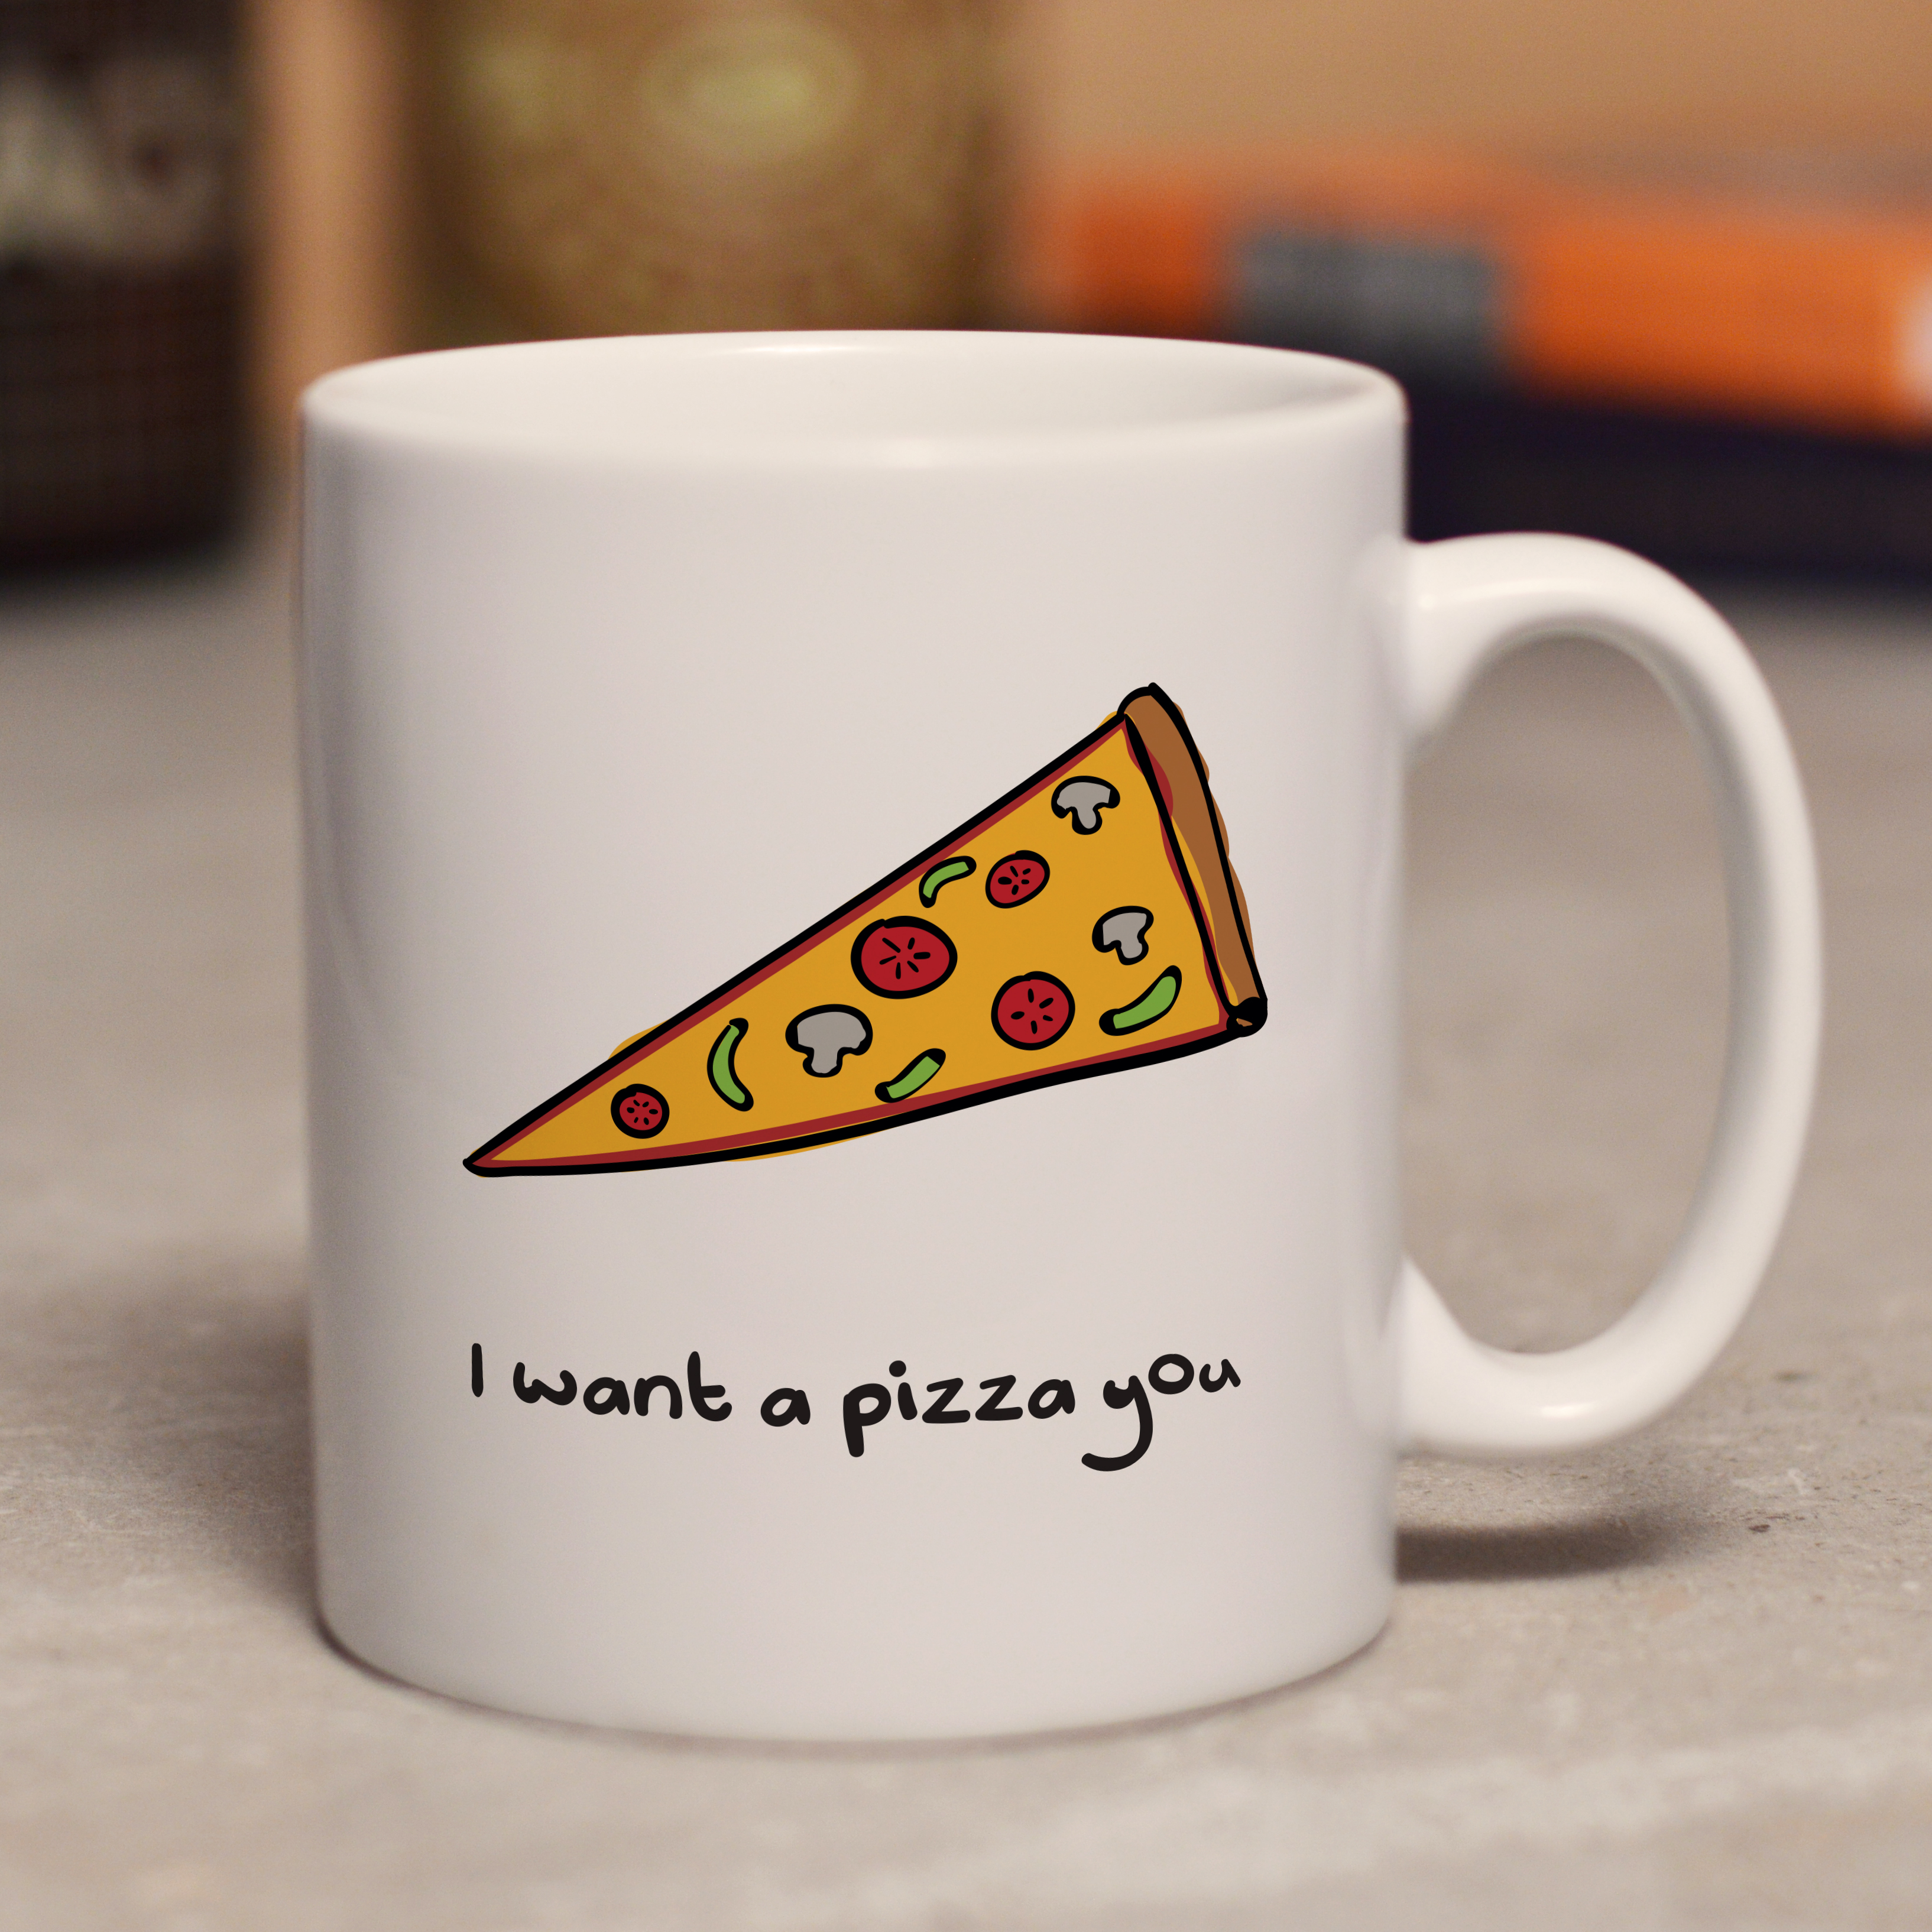 I want a pizza you mug